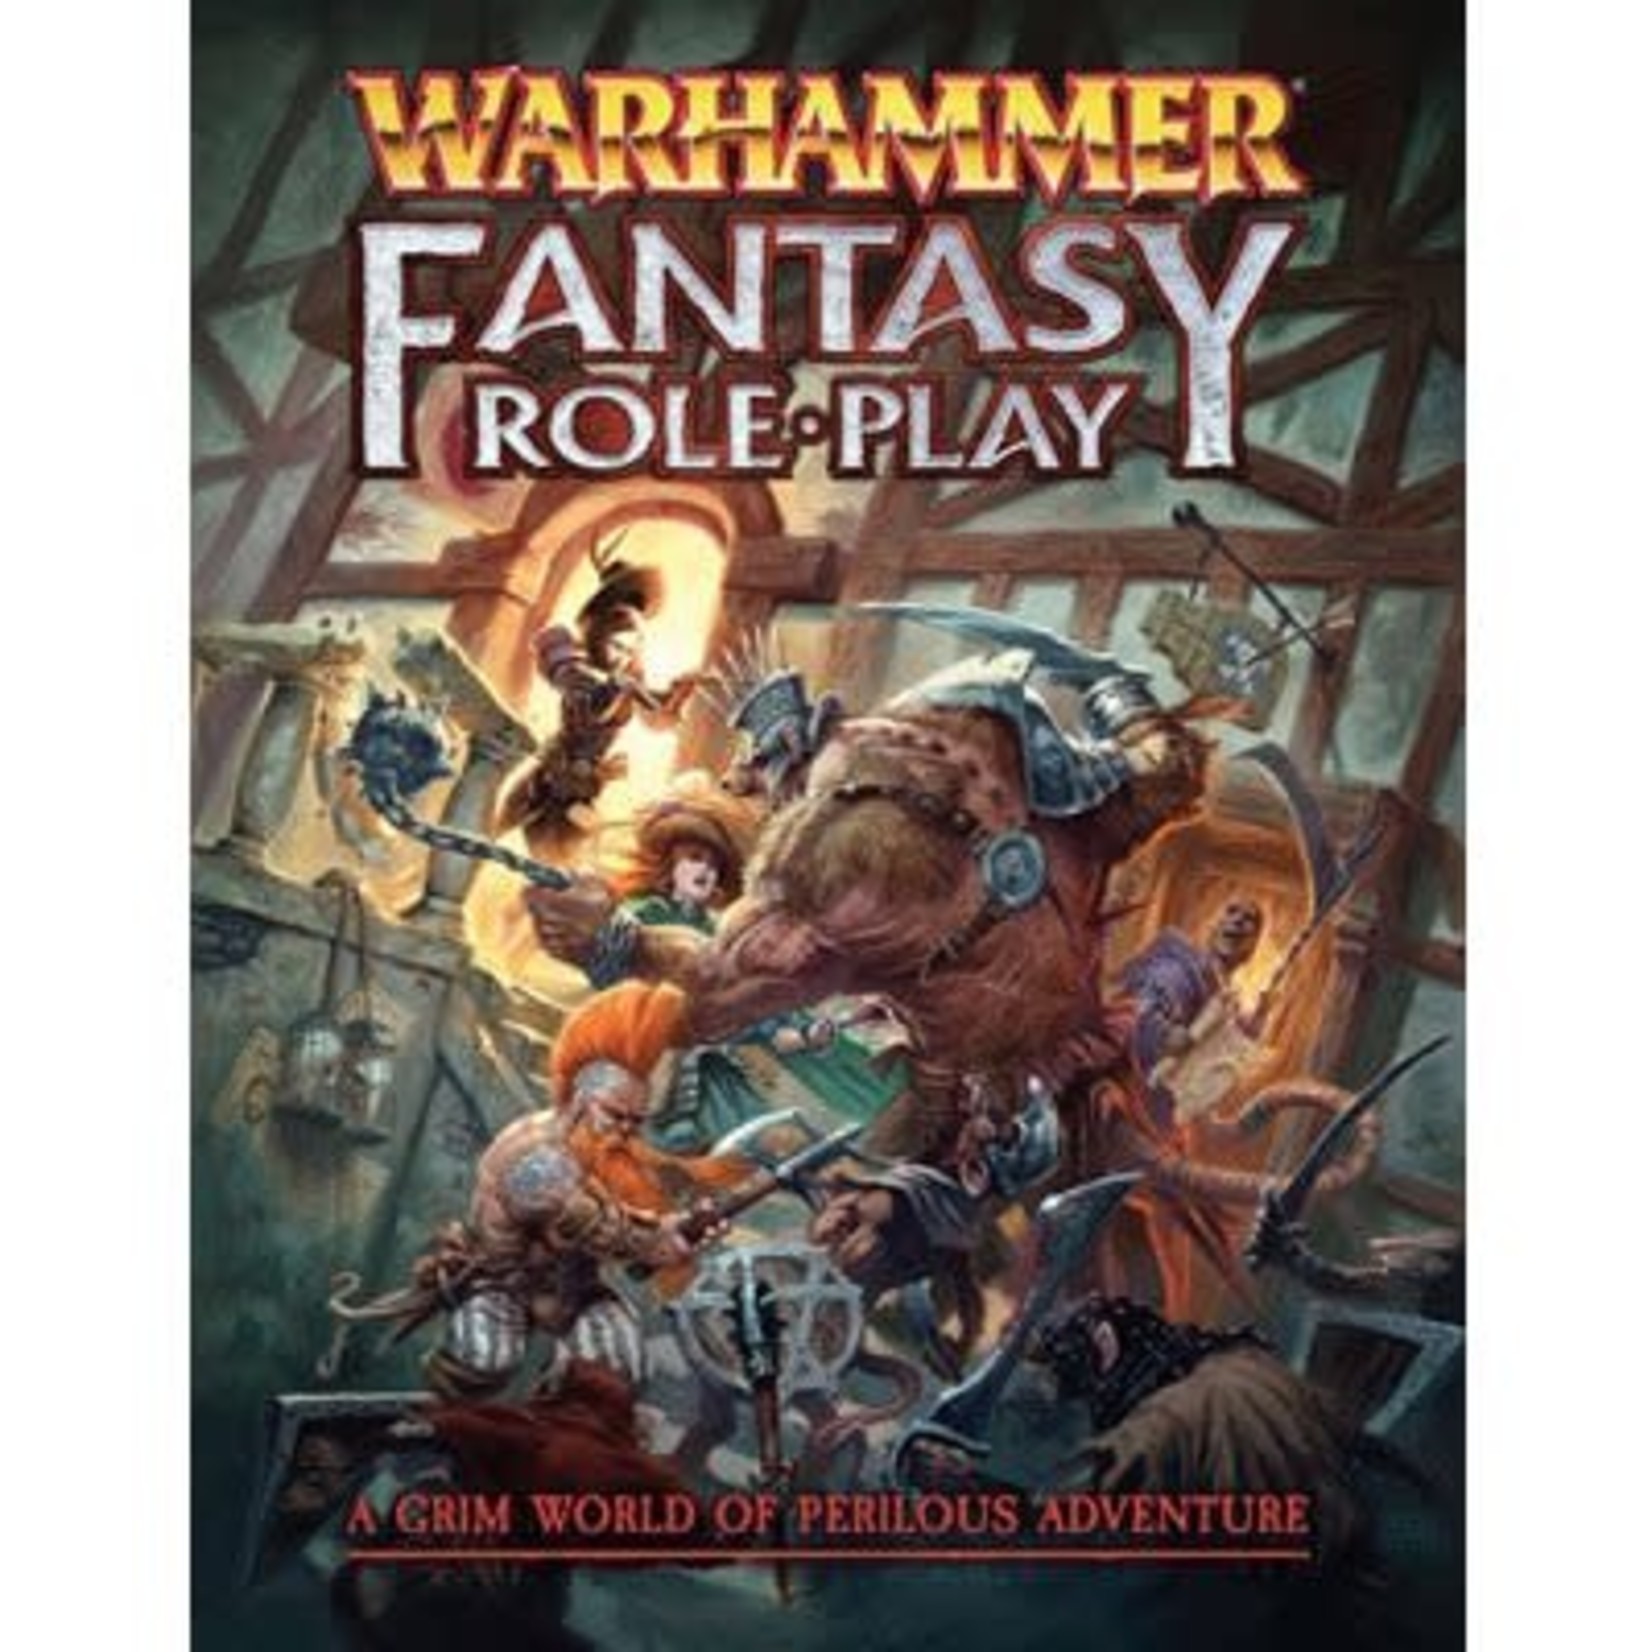 Warhammer Fantasy Role Play Warhammer Fantasy Roleplay 4th Edition Rulebook